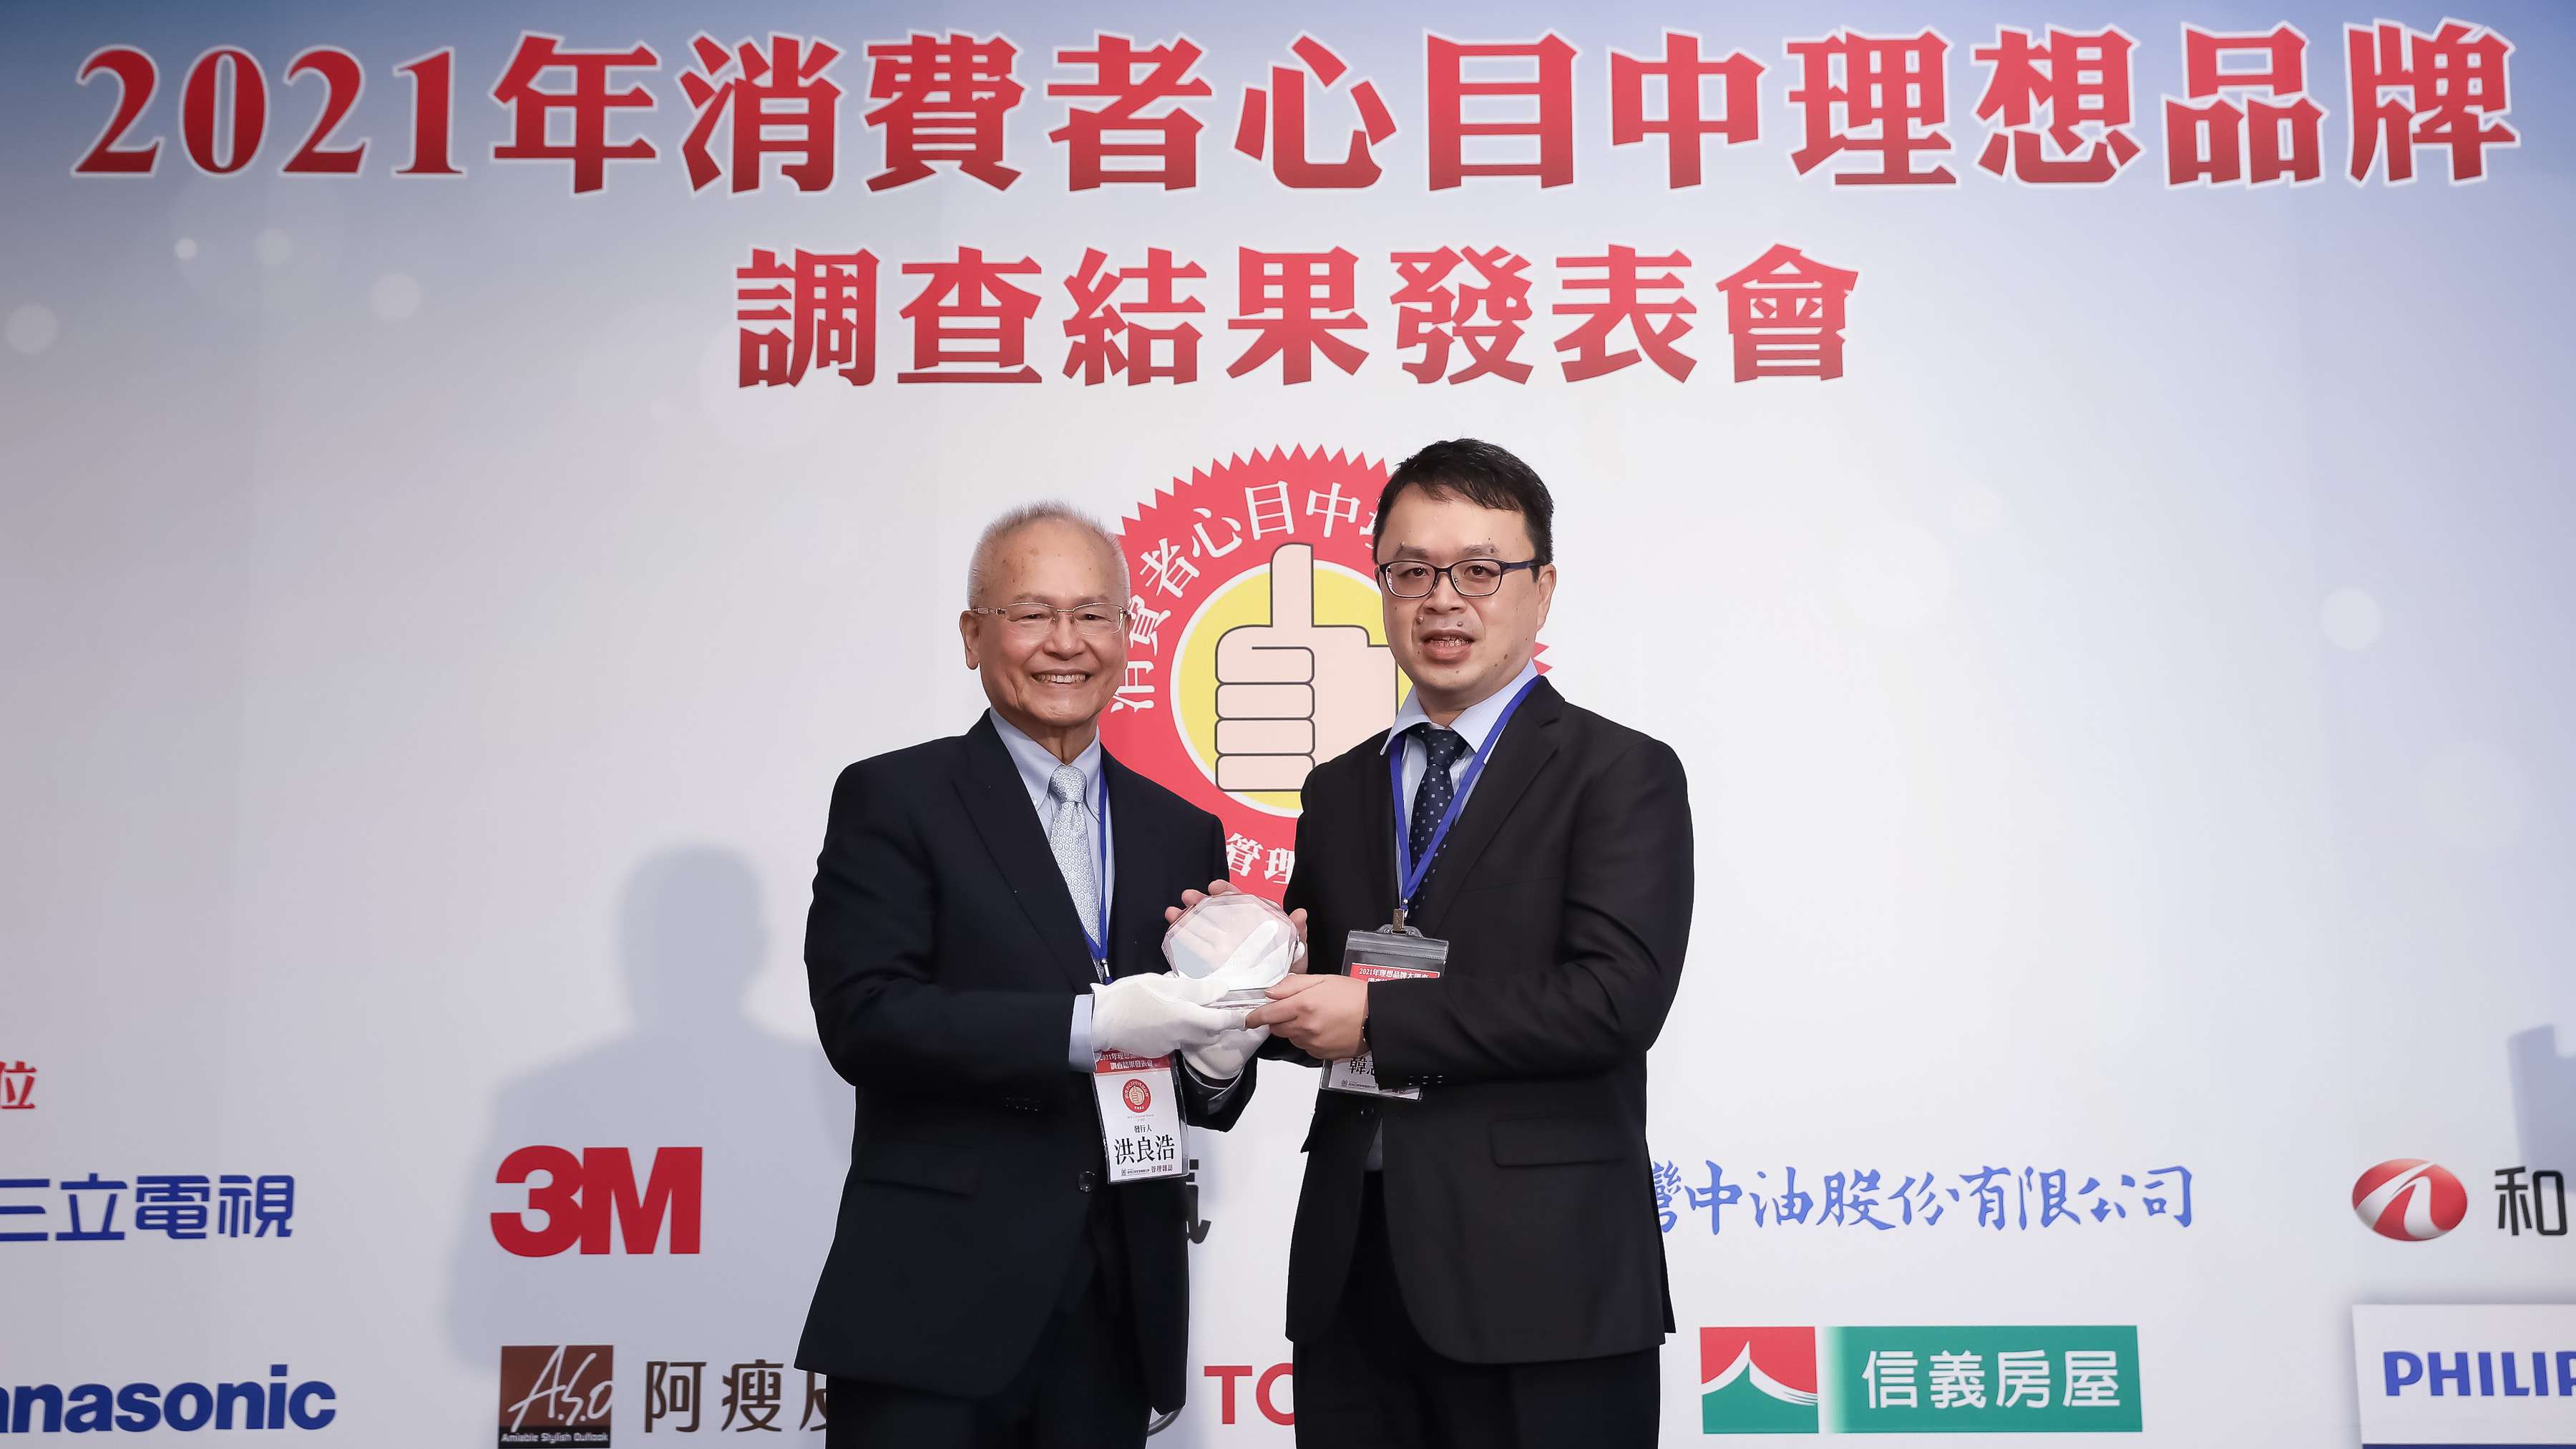 《管理雜誌》發行人洪良浩(左)頒發「消費者心目中理想品牌第一名」獎項予和泰汽車 Toyota 車輛部部長韓志剛(右)。